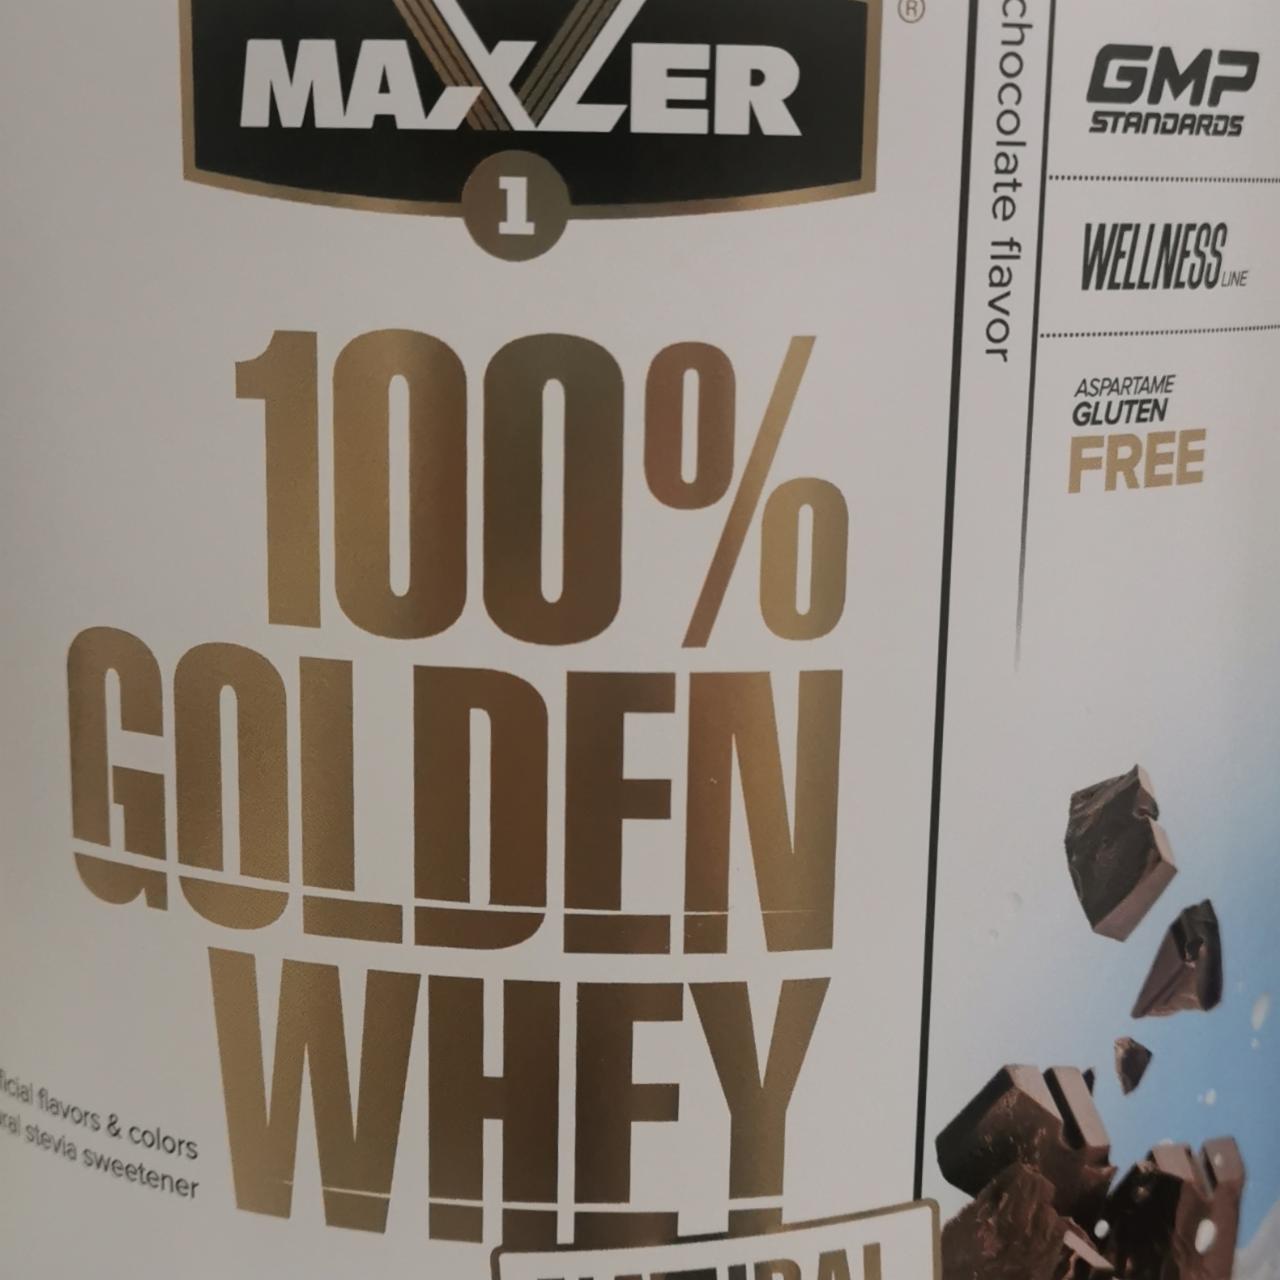 Фото - Биологически активная добавка к пище вкус шоколад 100% Golden Whey Maxler